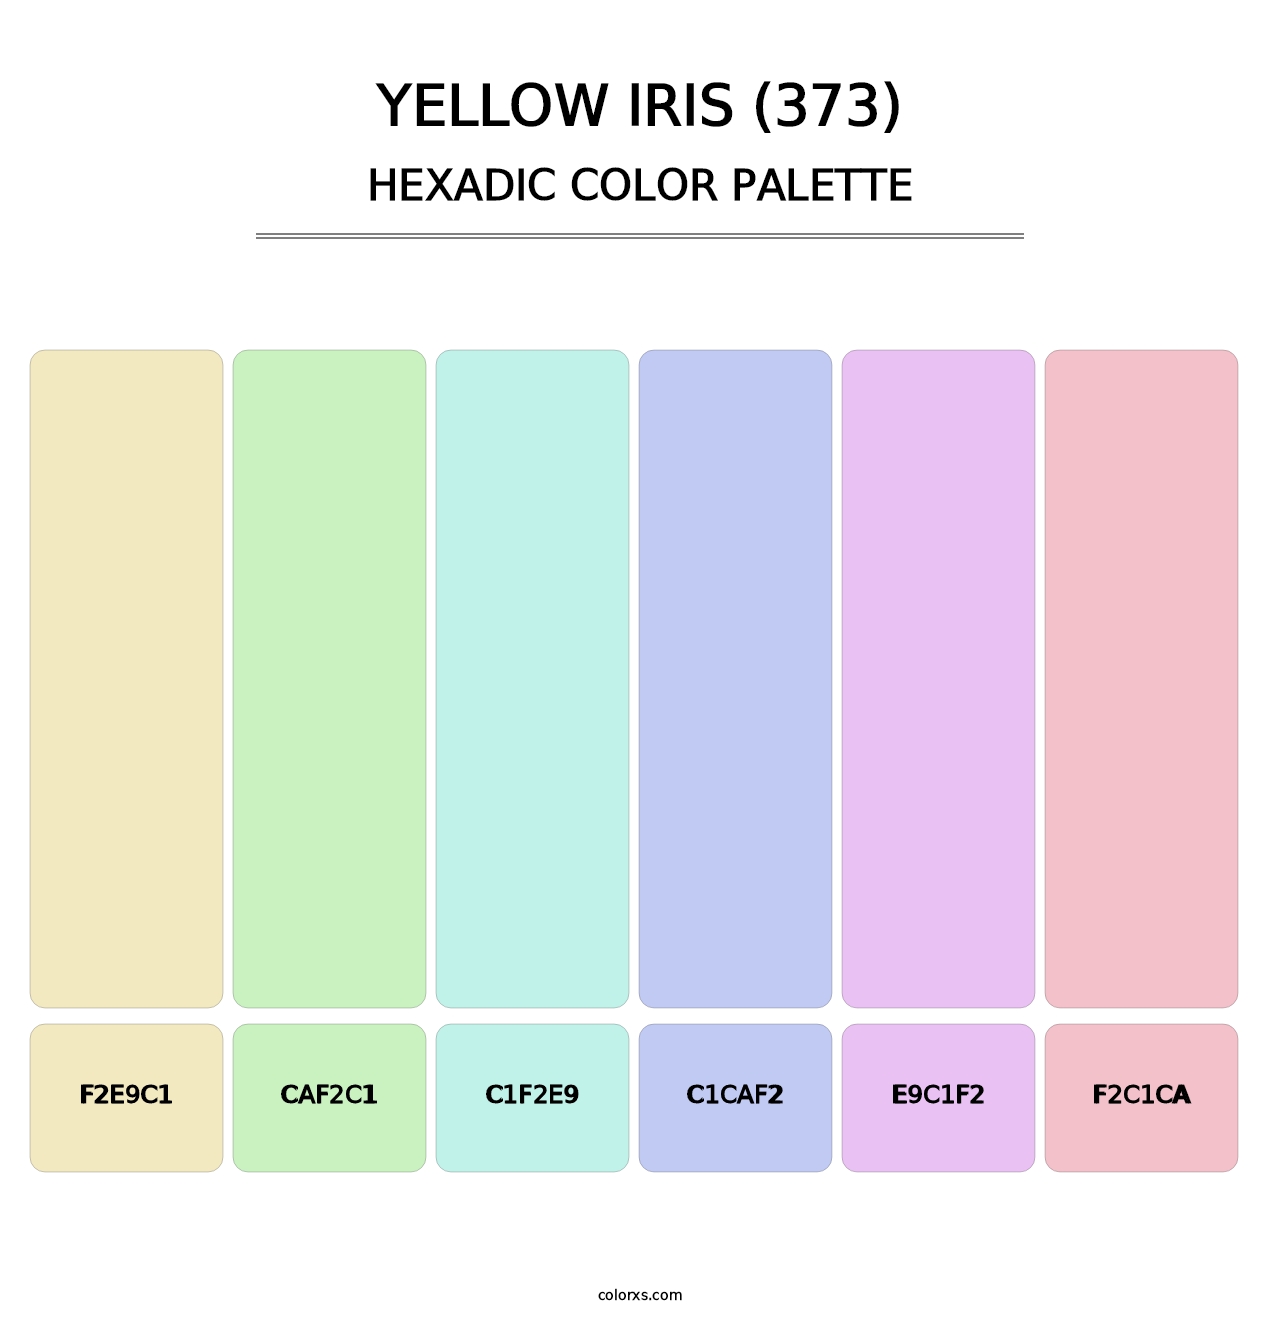 Yellow Iris (373) - Hexadic Color Palette